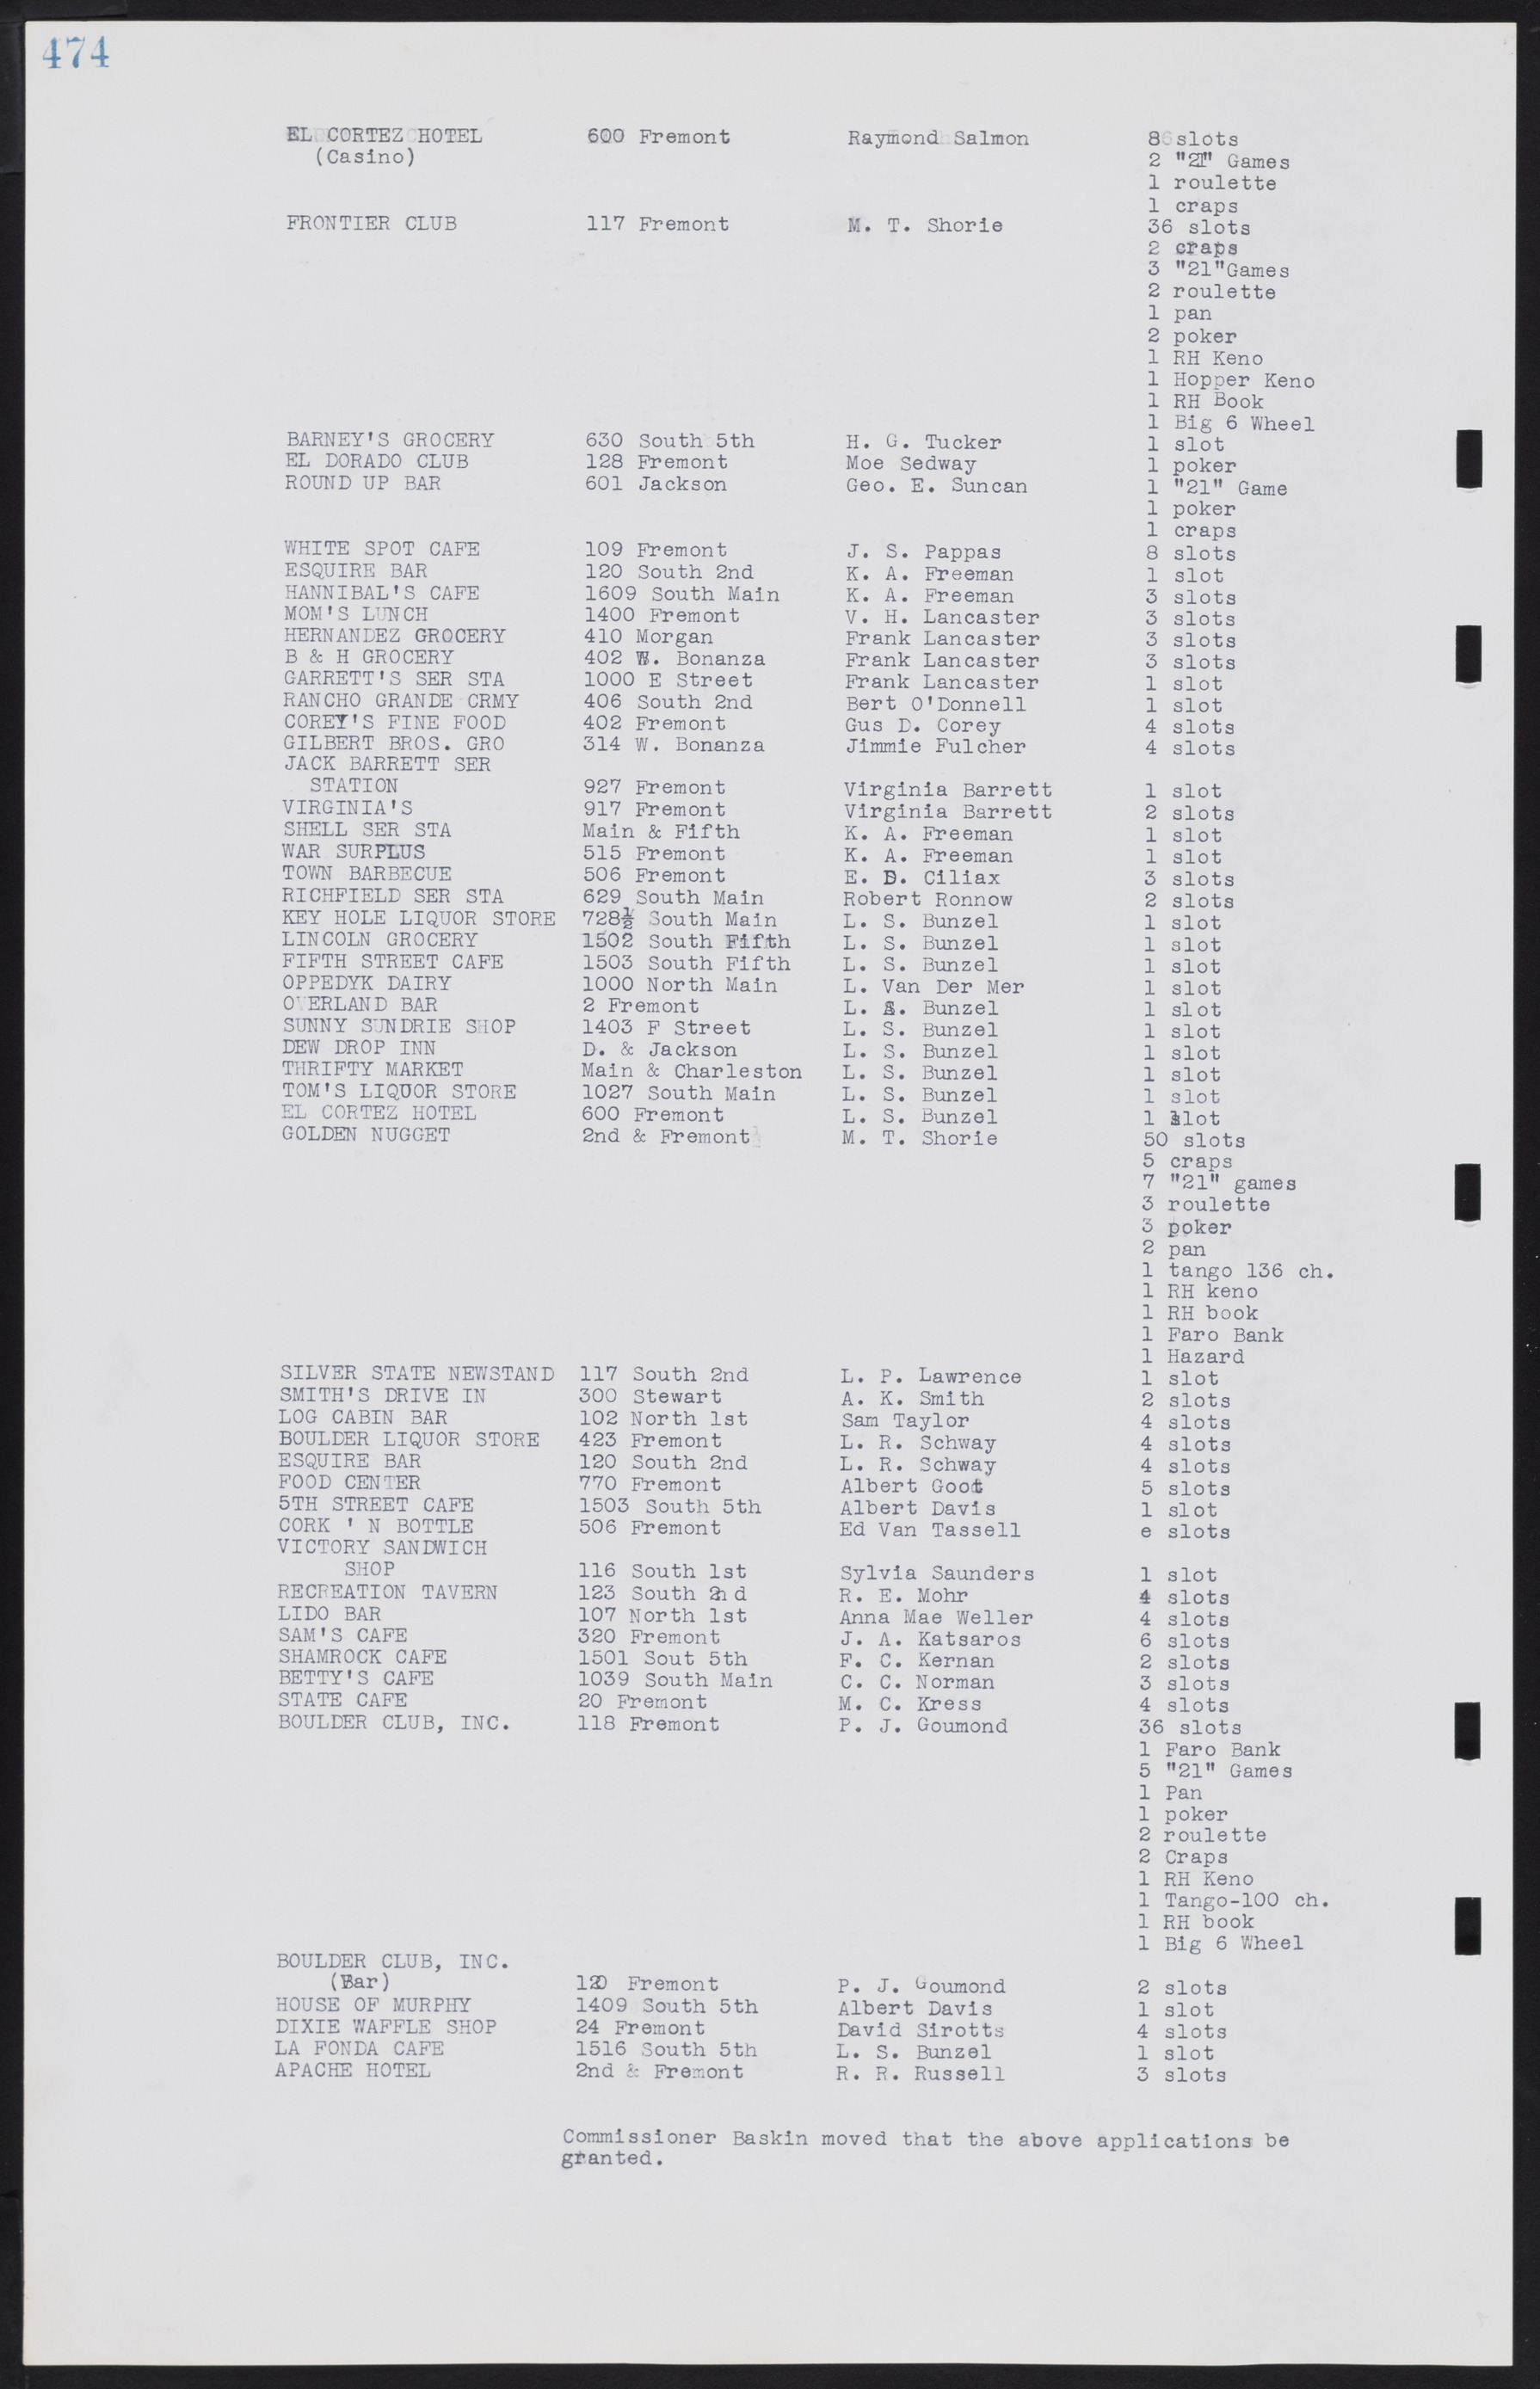 Las Vegas City Commission Minutes, August 11, 1942 to December 30, 1946, lvc000005-505